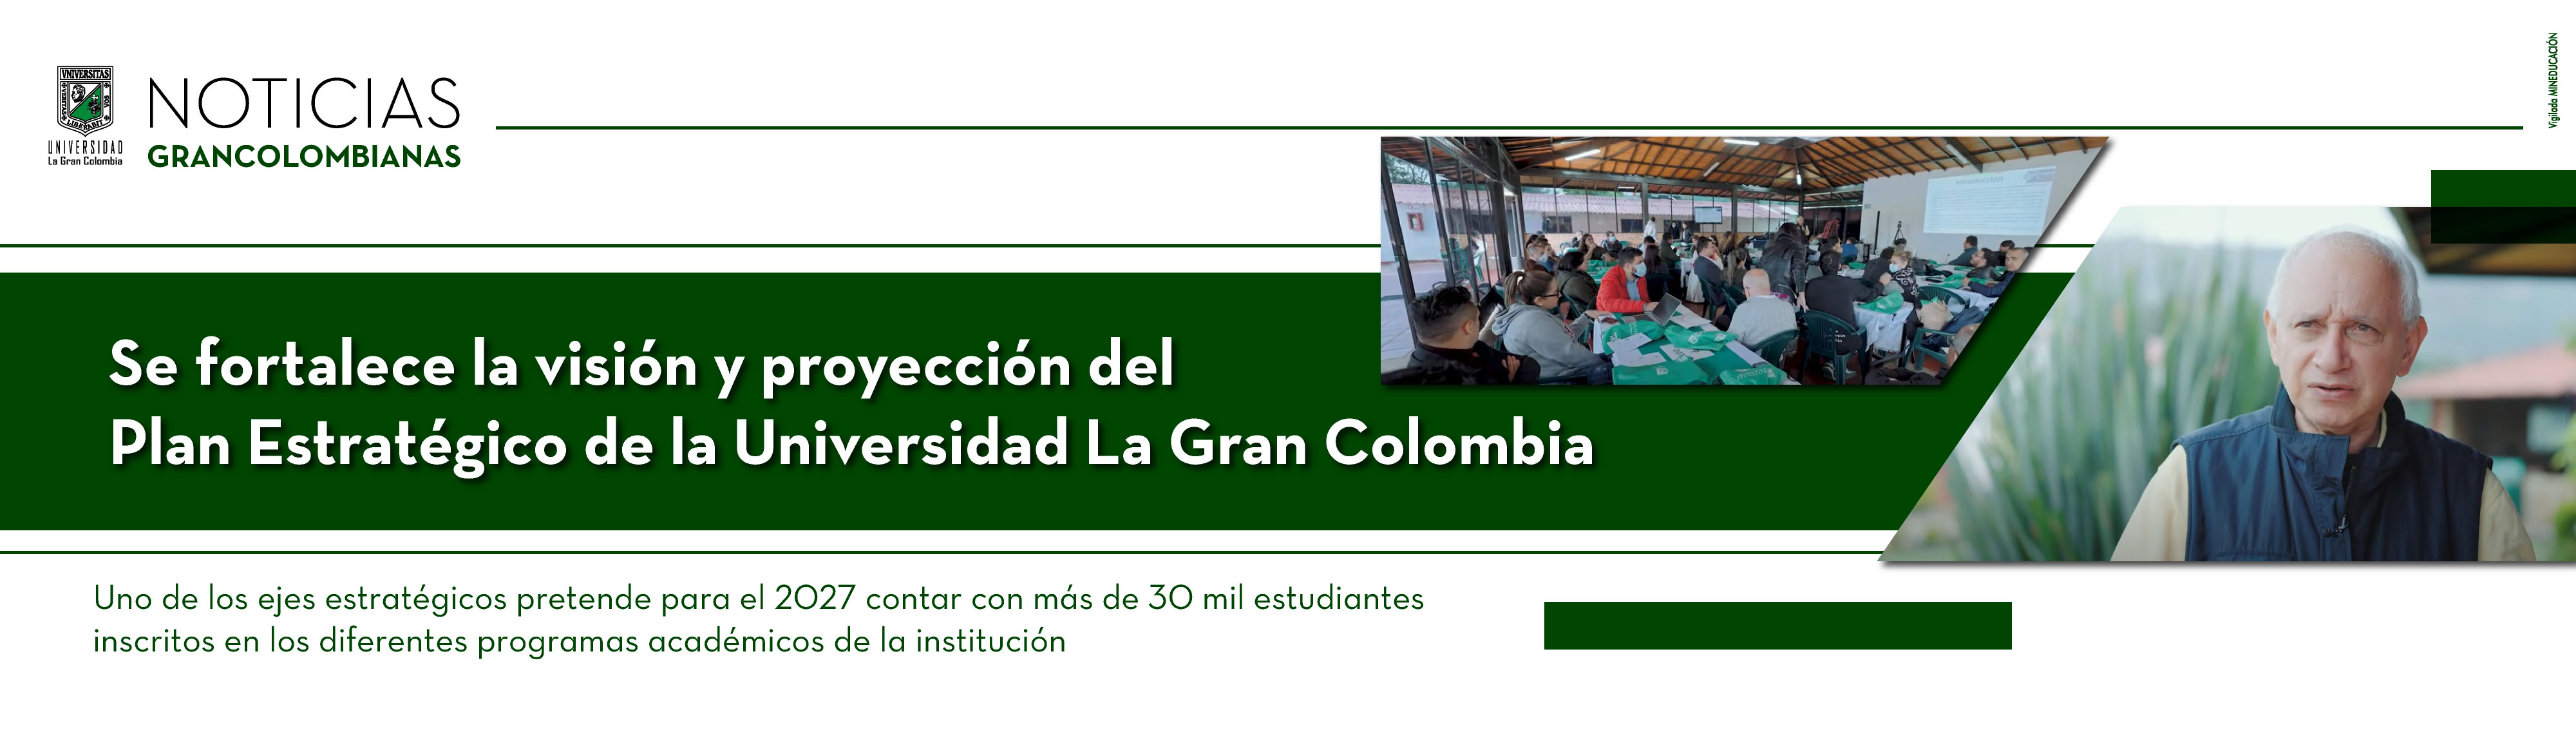 Se fortalece la visión y proyección del Plan Estratégico de la Universidad La Gran Colombia